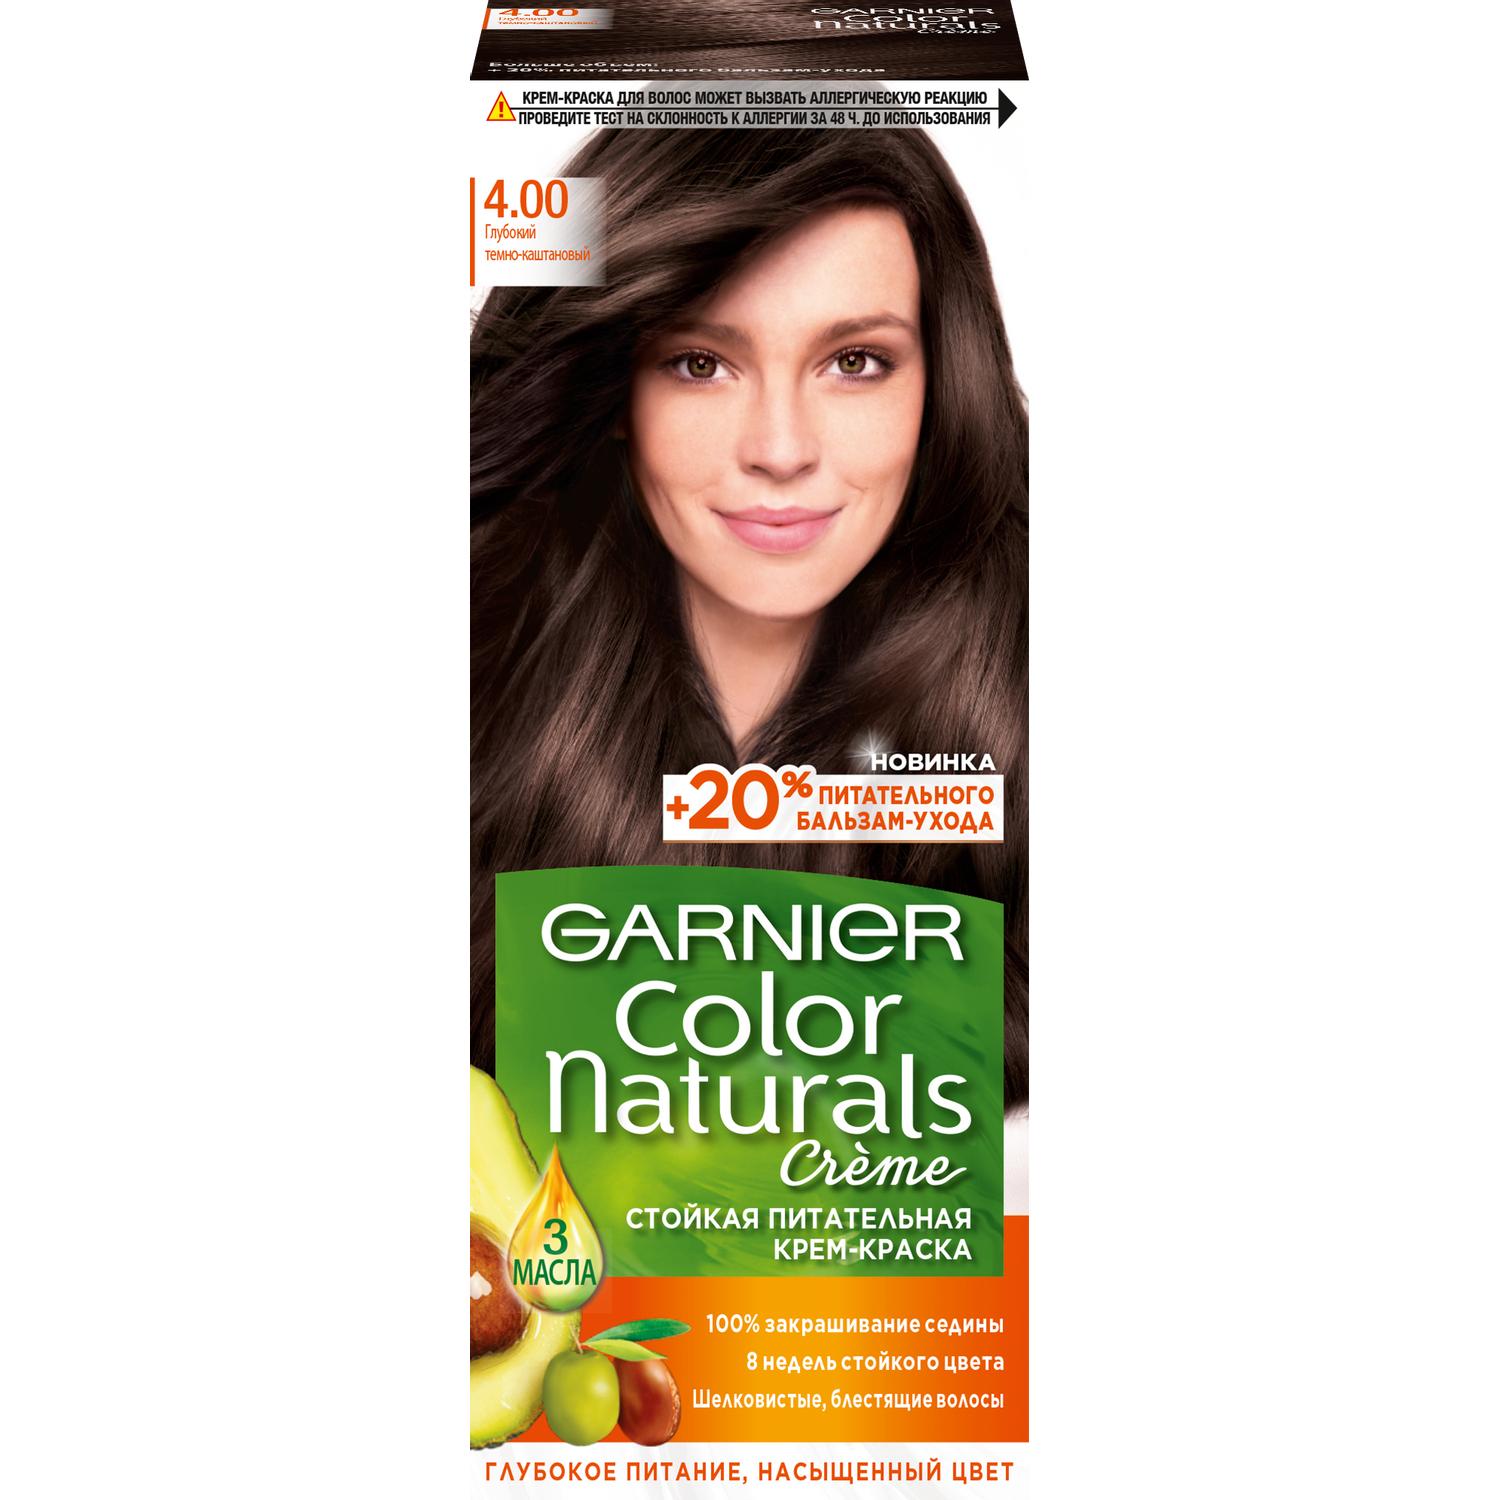 Крем-краска для волос Garnier Color Naturals 4.00 Глубокий темно-каштановый 110 мл фото